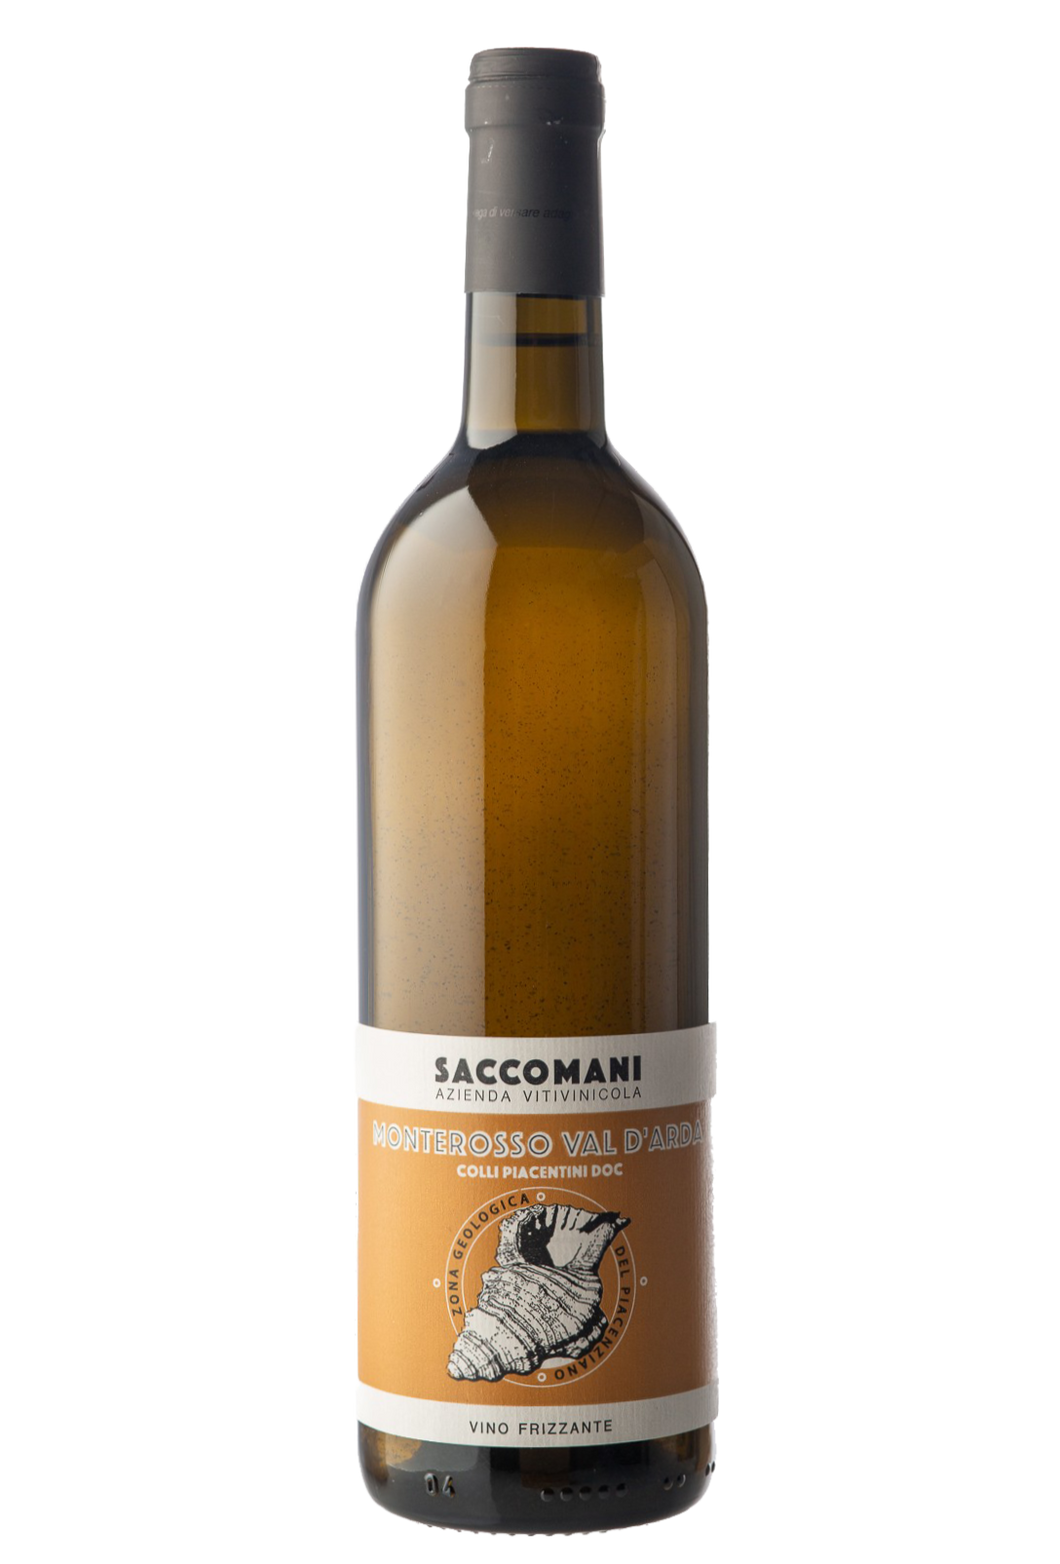 Saccomani - DOC Monterosso Val d’Arda Colli Piaccentini - Vino frizzante Bianco - 2021 - Italie